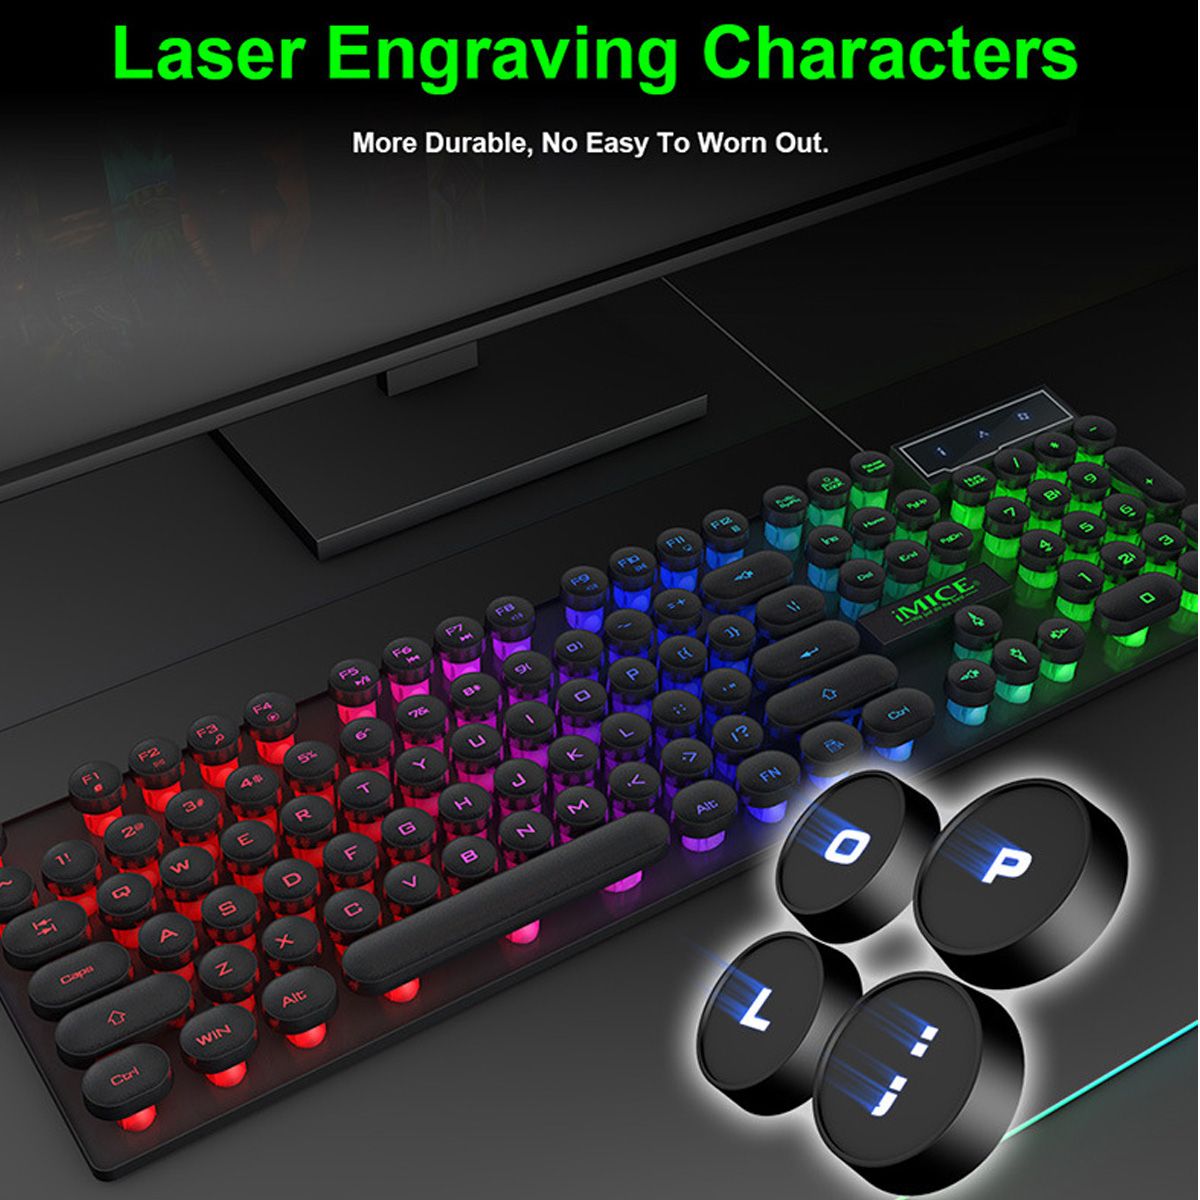 IMICE-USB-RGB-Mechanical-Gaming-Keyboard-Luminous-Game-Keyboard-Desktop-Punk-Mechanical-Handle-Float-1707317